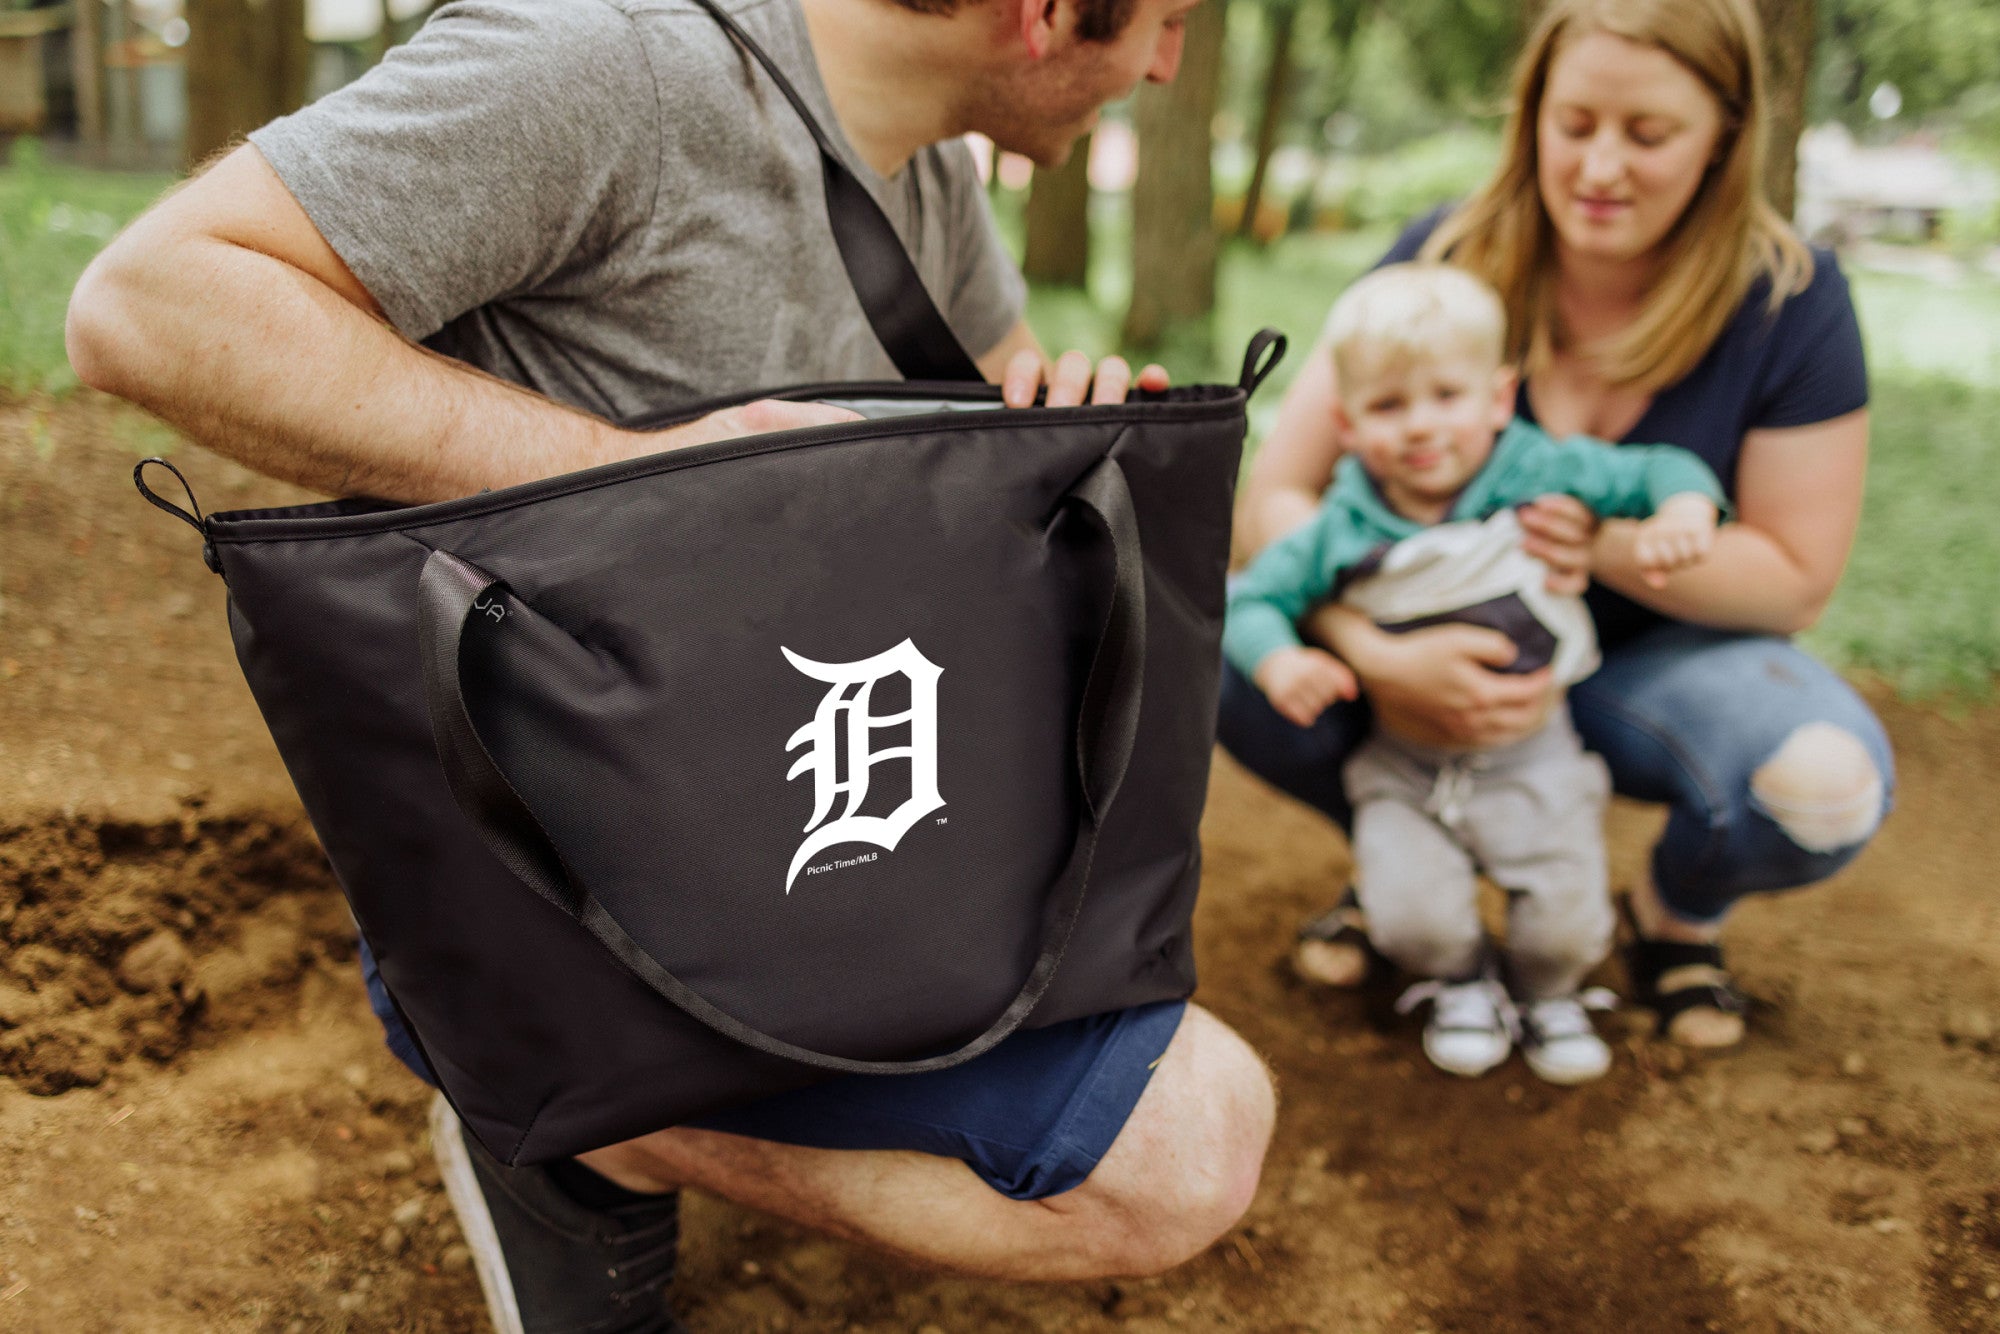 Detroit Tigers - Tarana Cooler Tote Bag